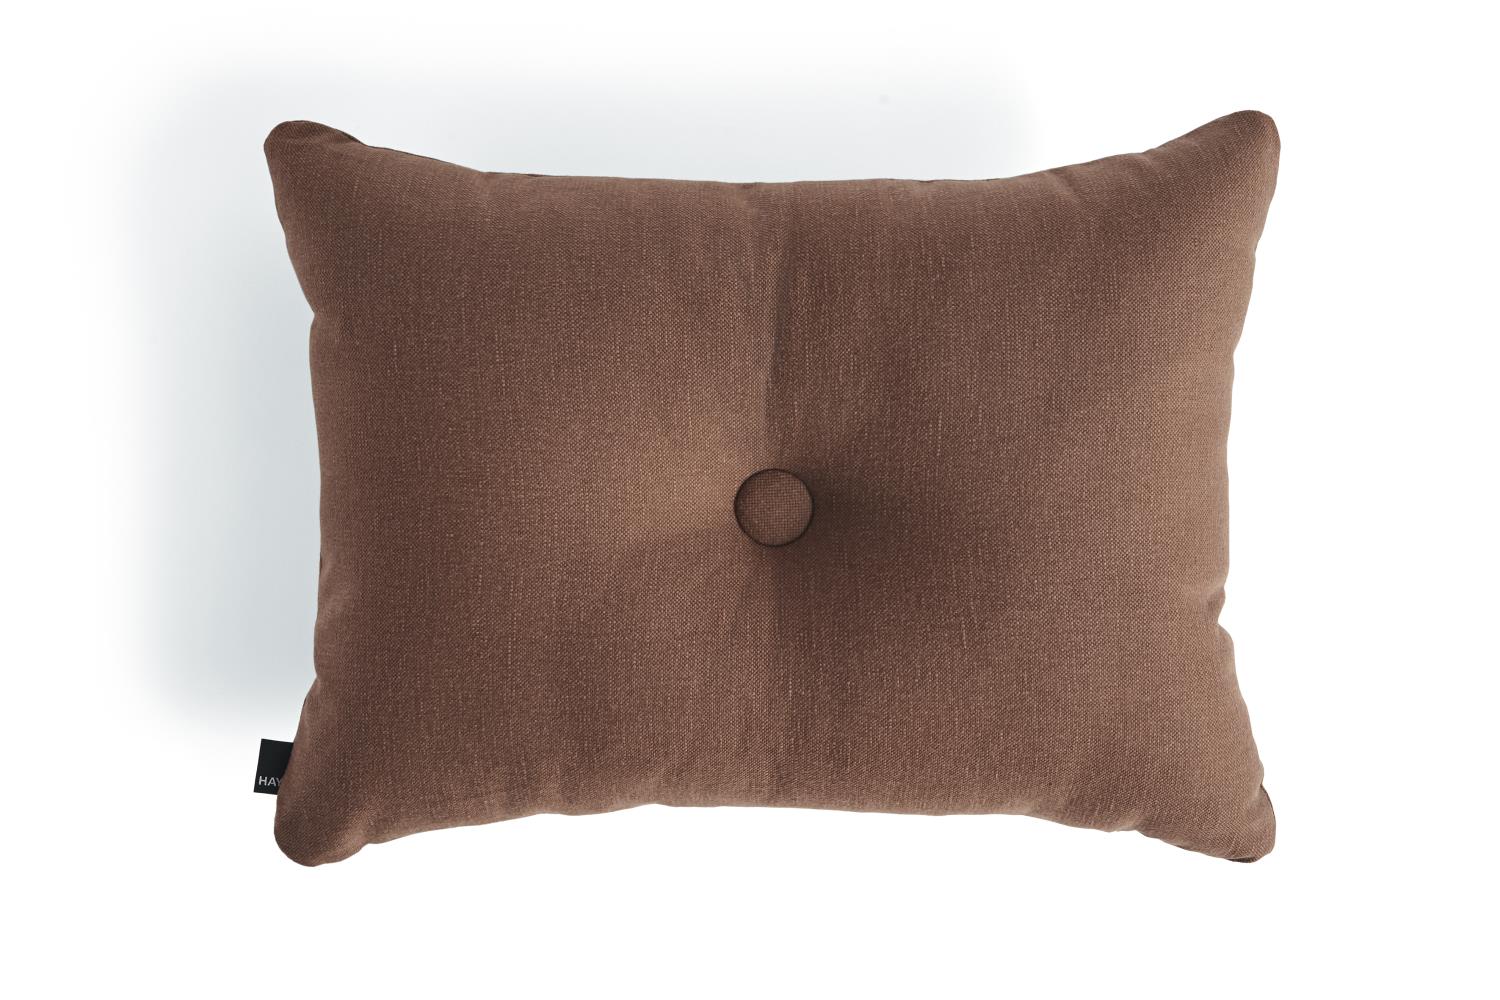 HAY - Dot Cushion Planar - 1 Dot - Chocolate